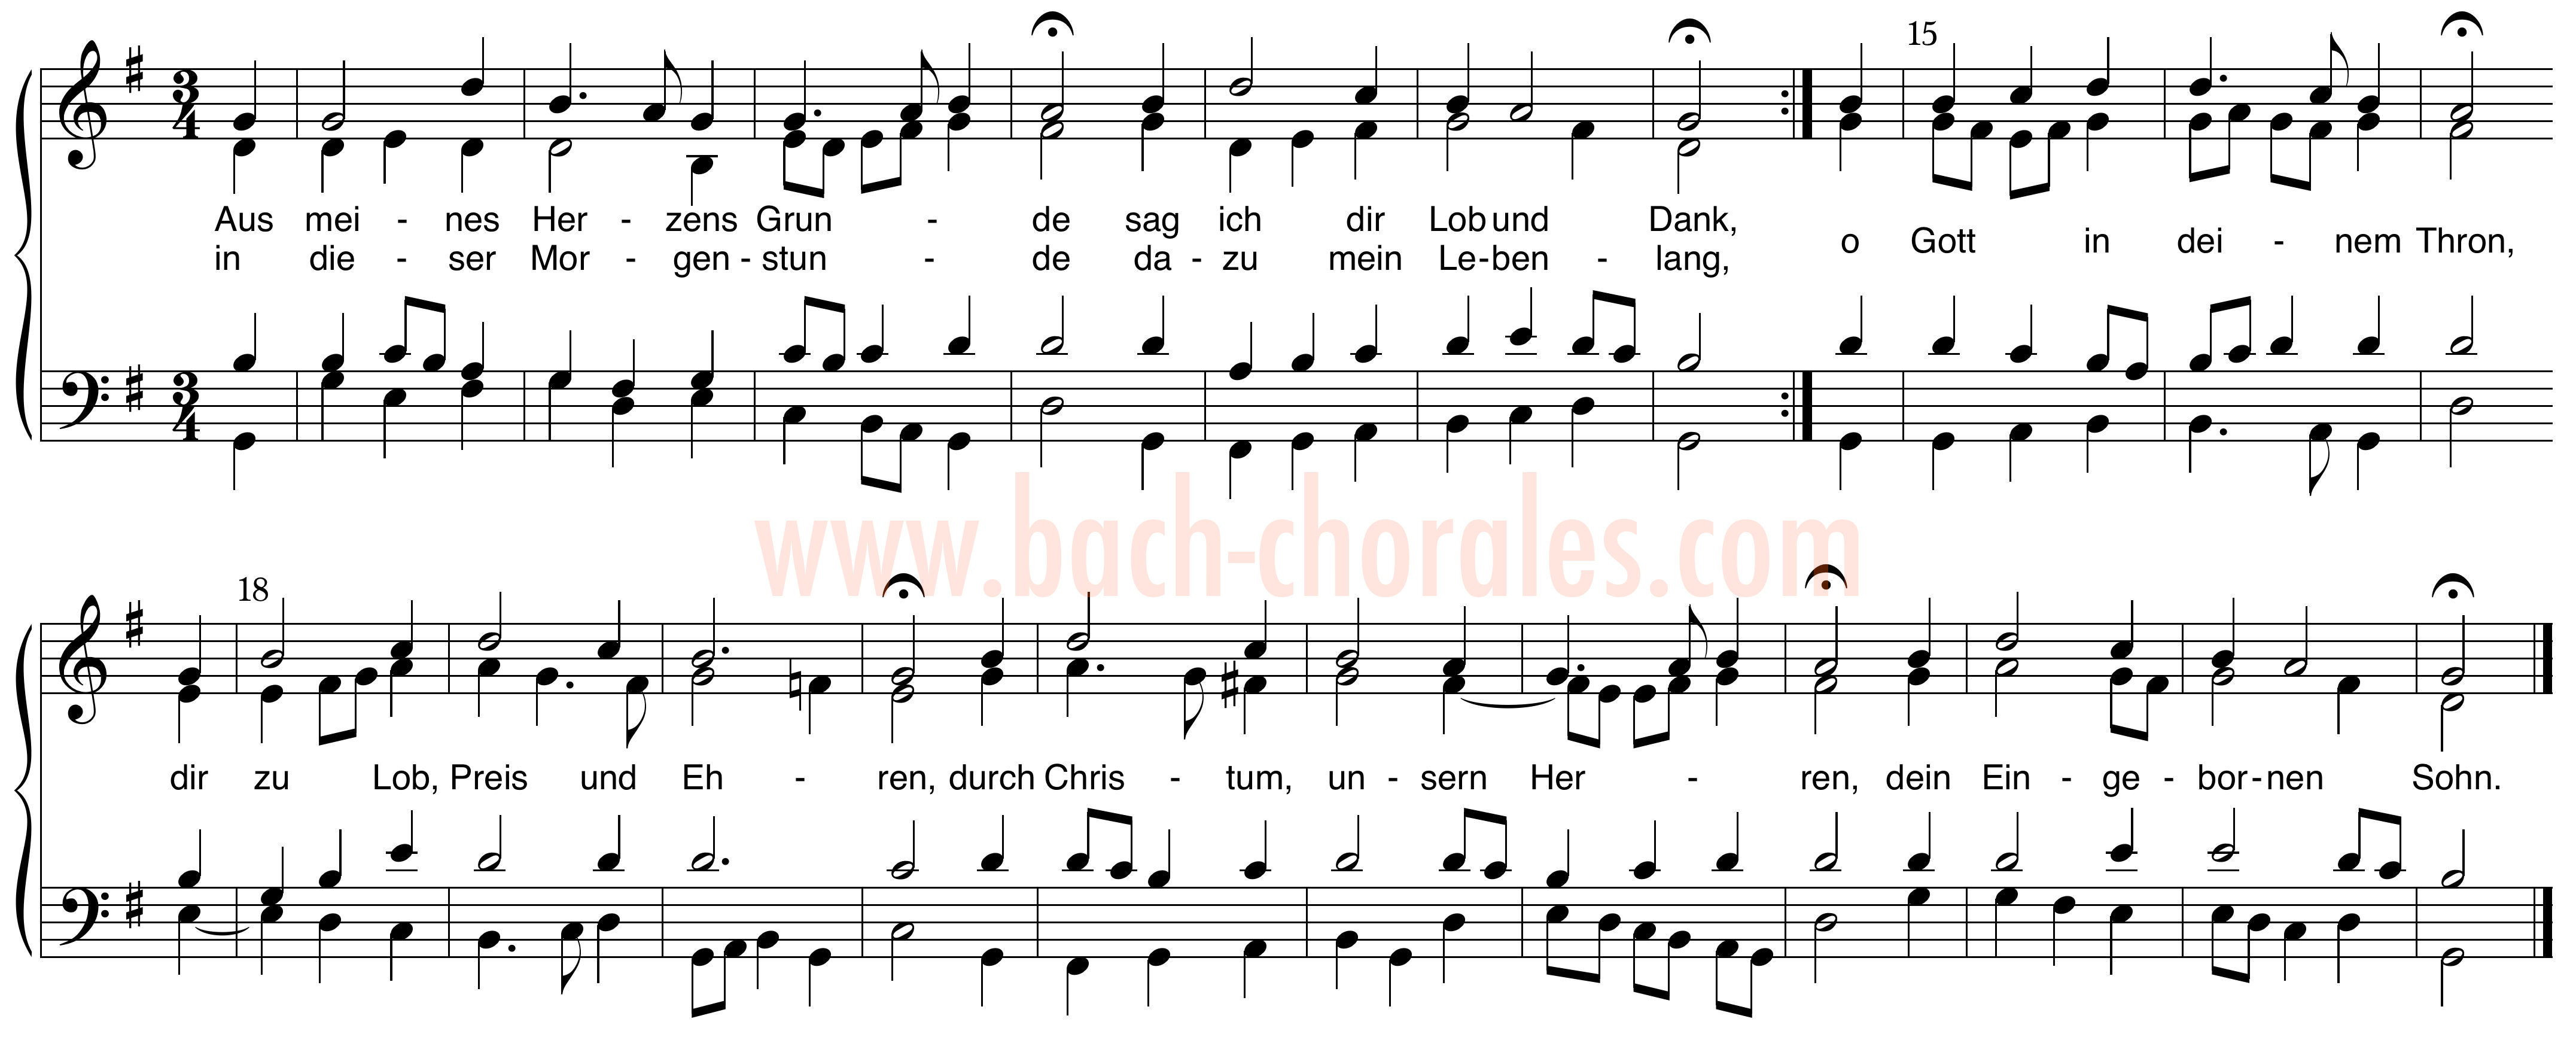 notenbeeld BWV 269 op https://www.bach-chorales.com/